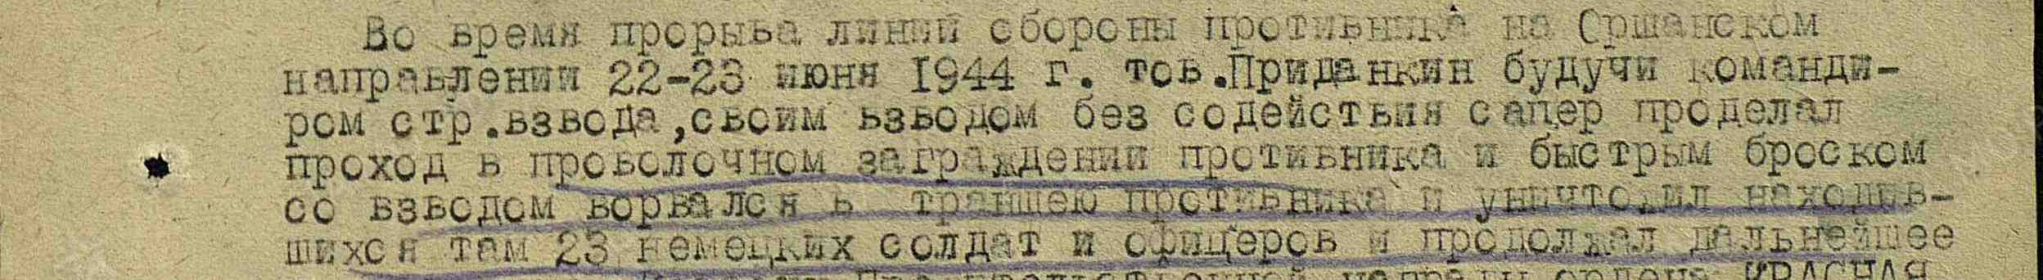 Орден Александра Невского (Приказ №0138 от 24.08.1944)